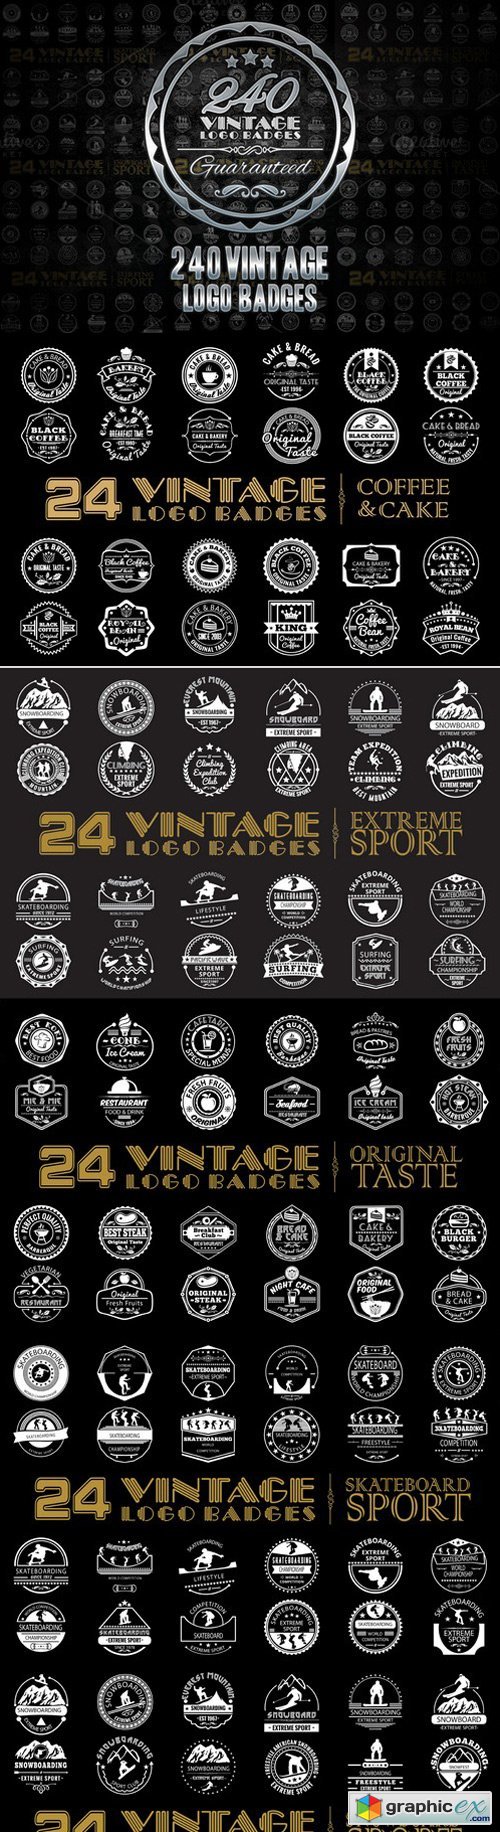 240 Vintage logo Badges